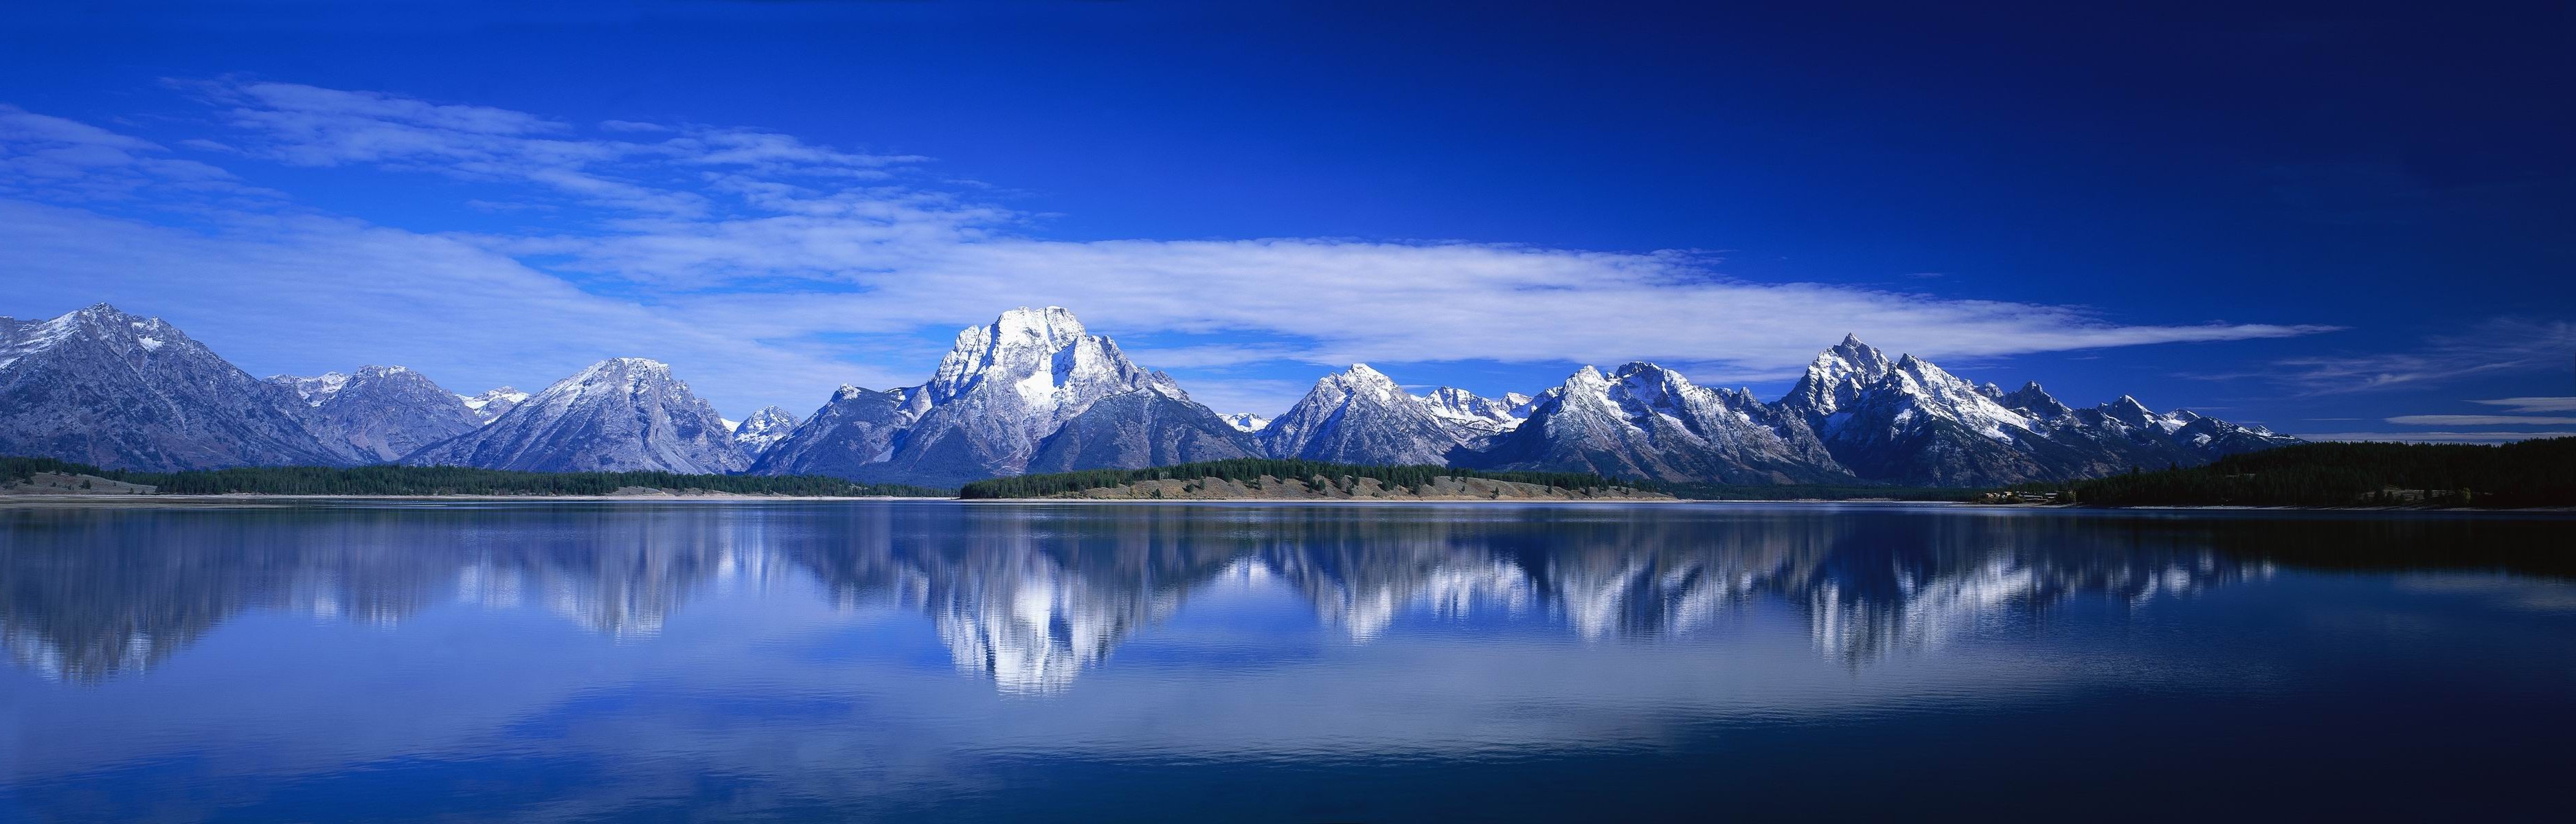 landscape, Lake, Mountain, Reflection Wallpaper